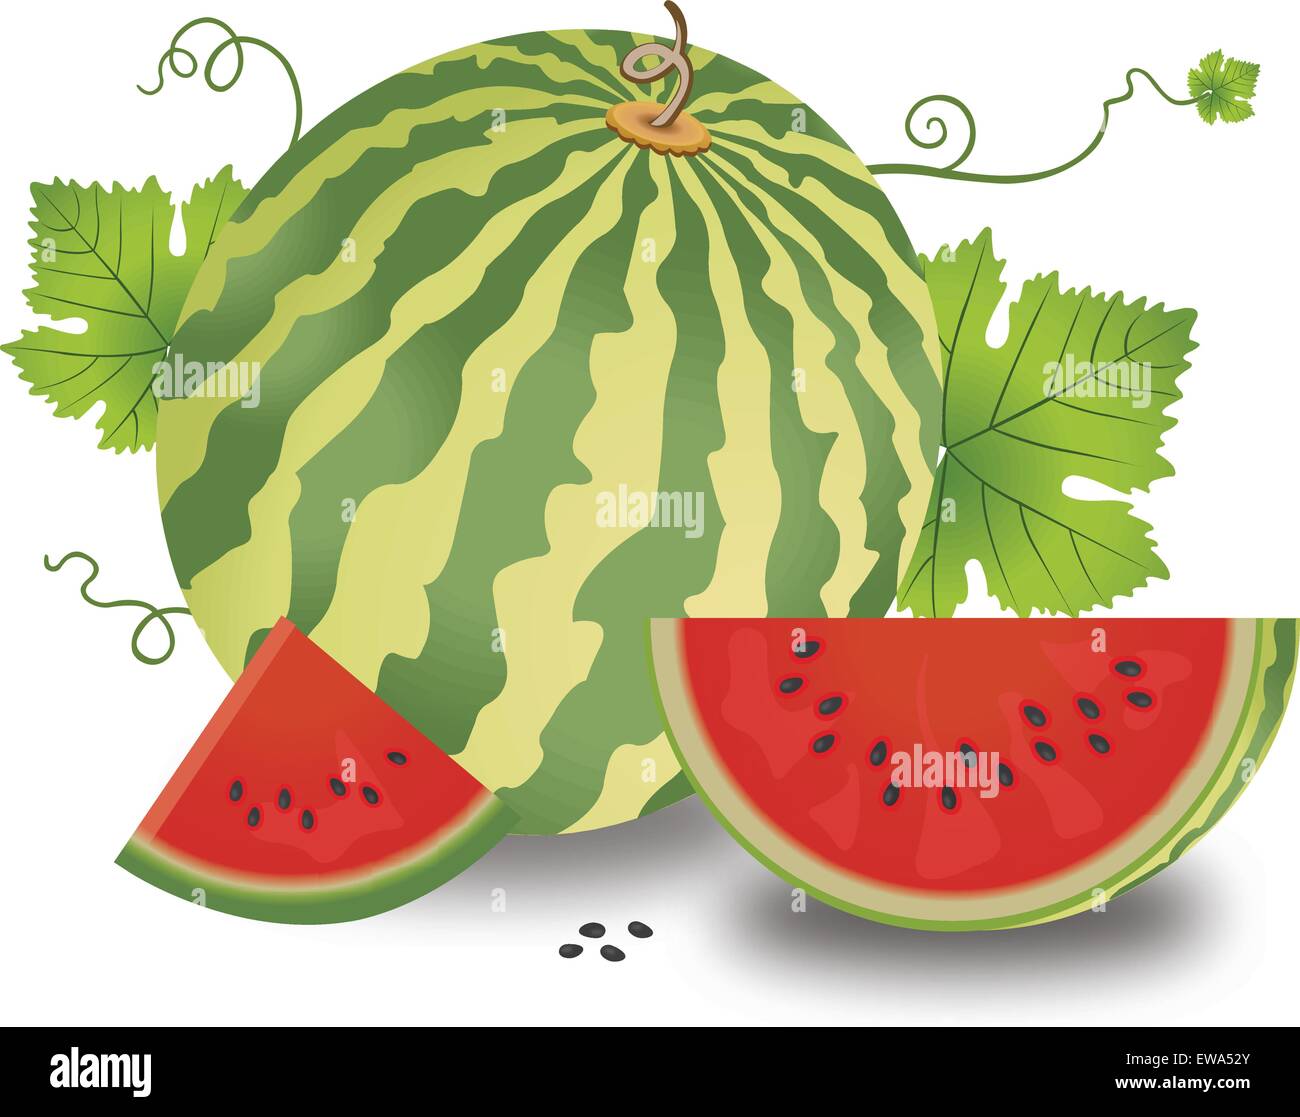 Wassermelone, Obst, ganze und Geschnetzeltes mit Blätter und Reben, Samen, Vektor-illustration Stock Vektor